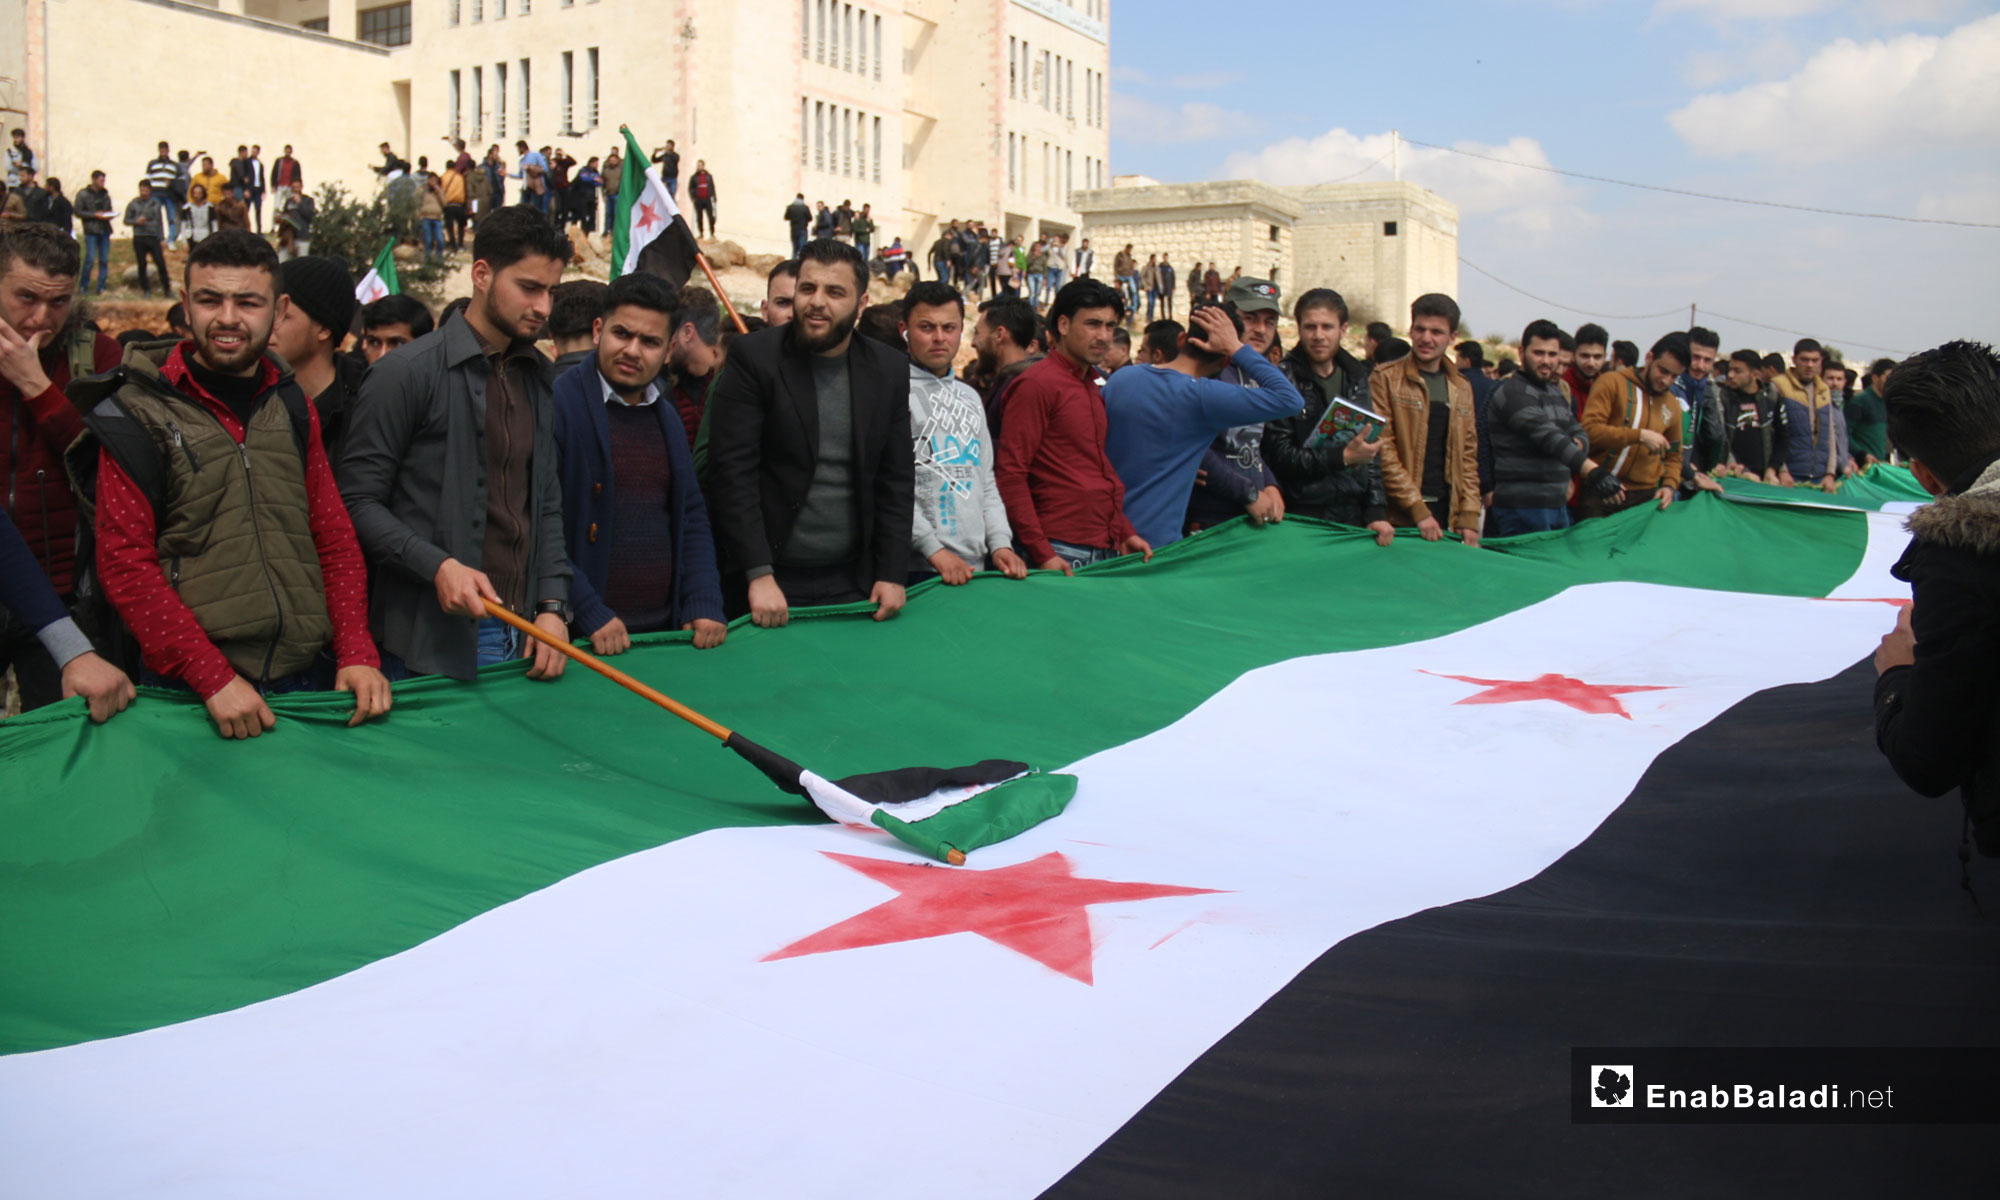 مظاهرة لطلاب جامعة إدلب بمناسبة الذكرى الثامنة للثورة السورية في إدلب - 18 من آذار 2019 (عنب بلدي)